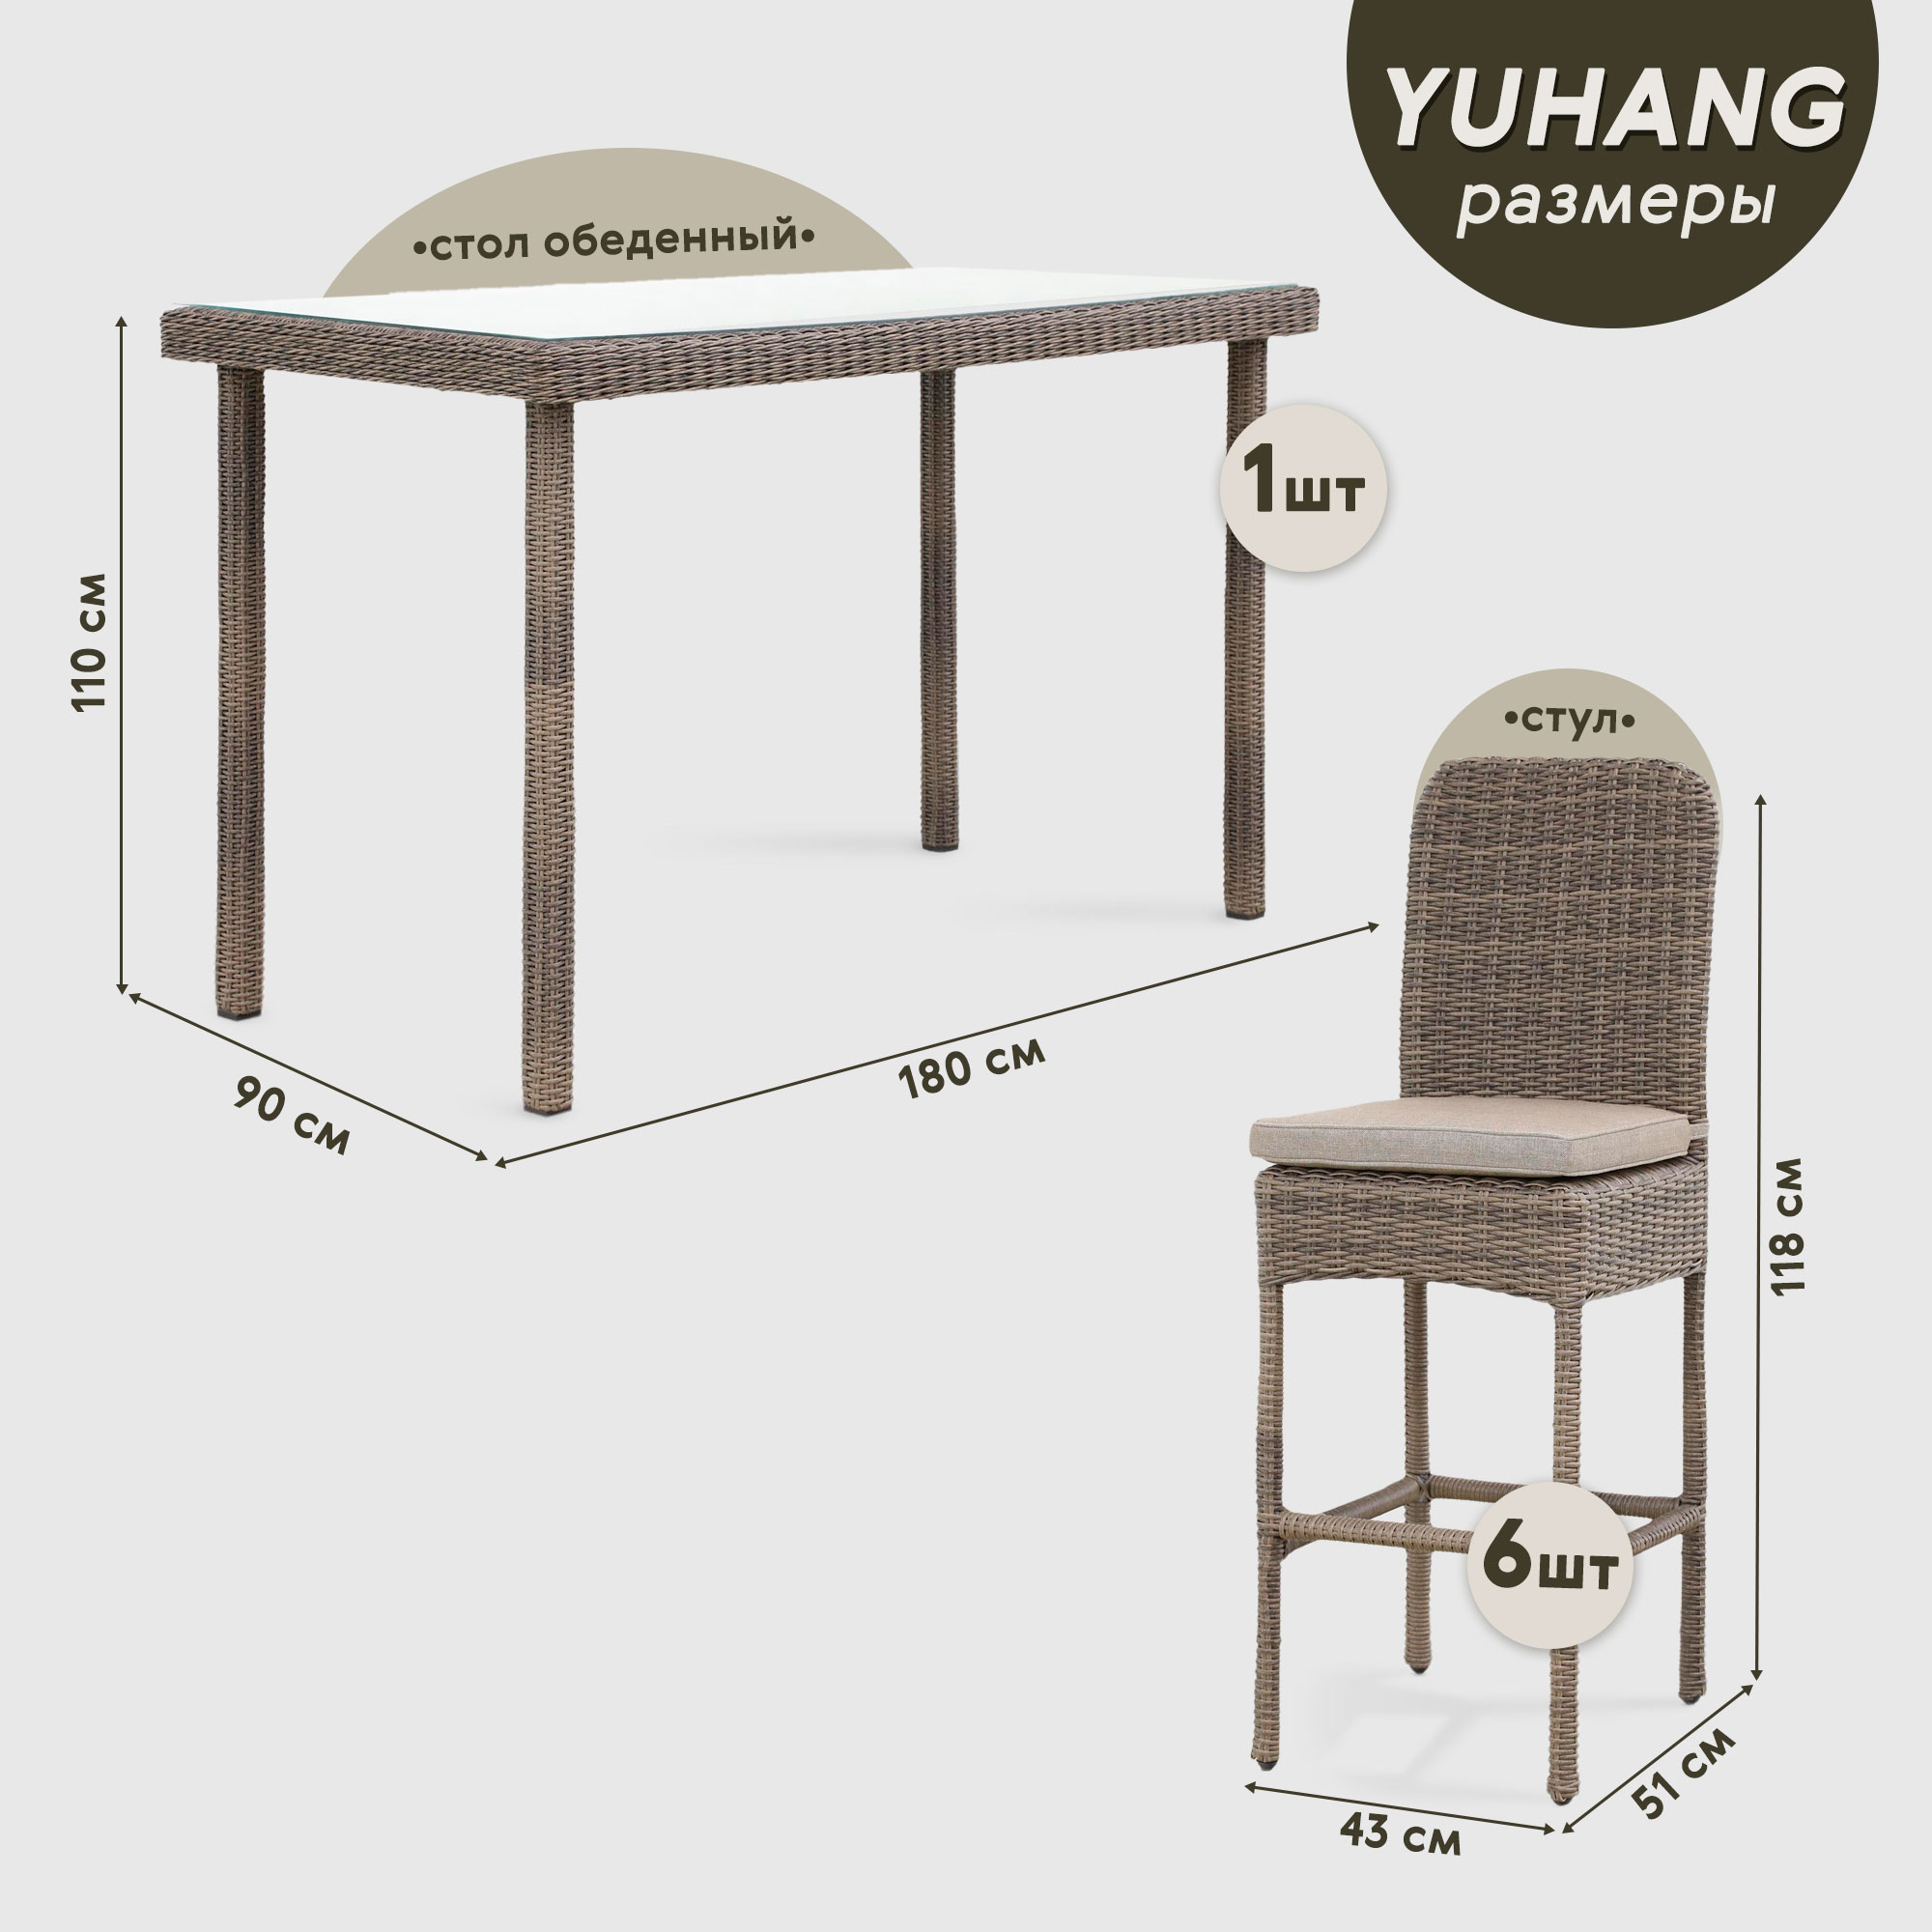 Комплект мебели Yuhang бежевый 7 предметов, цвет коричневый, размер 180х90х110 - фото 4